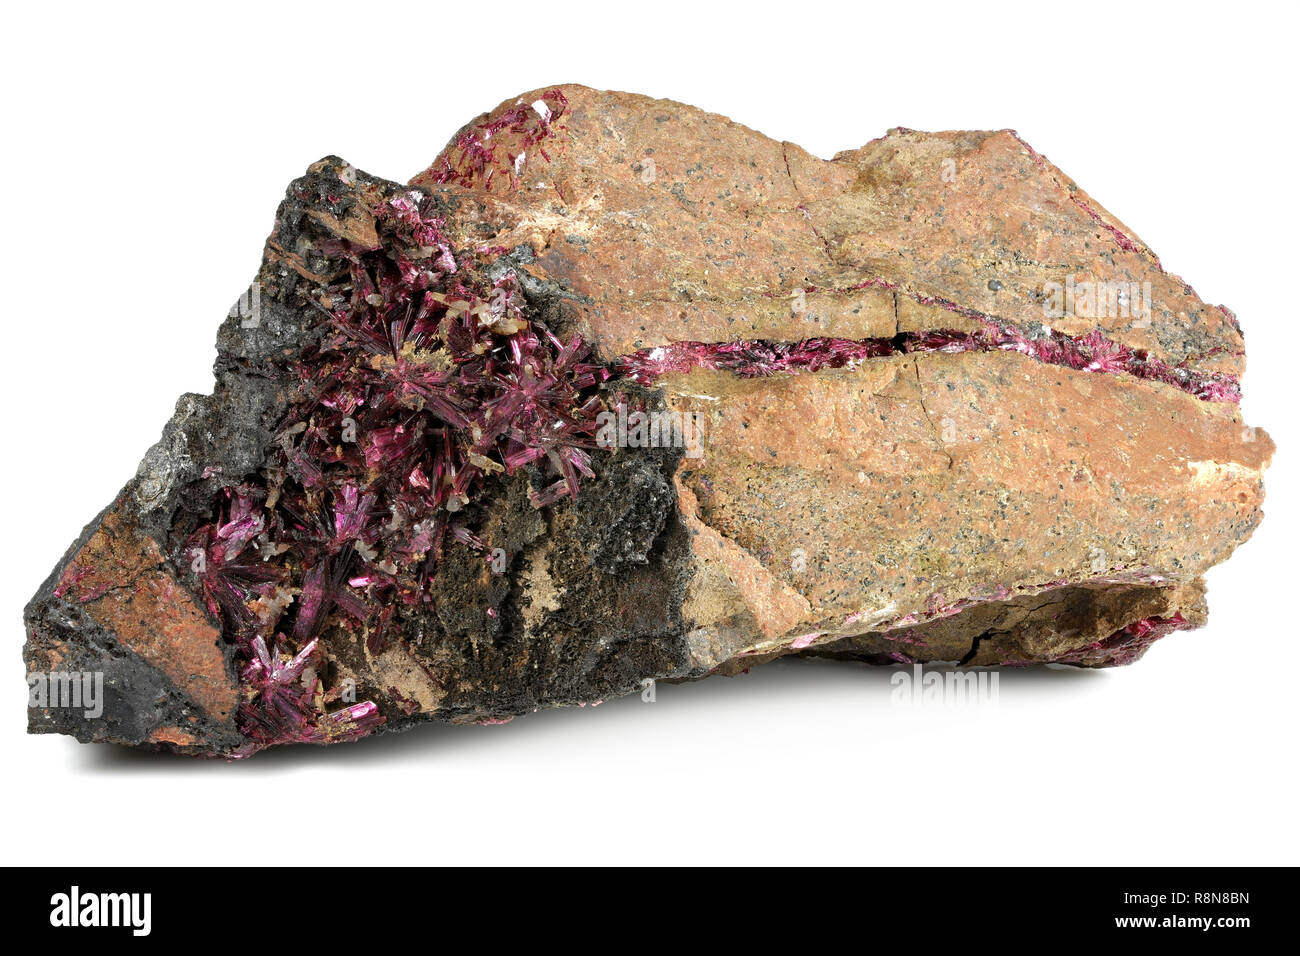 Erythrite O Mineral Rojo Del Cobalto En El Fondo Blanco Imagen de archivo -  Imagen de material, macro: 131681673